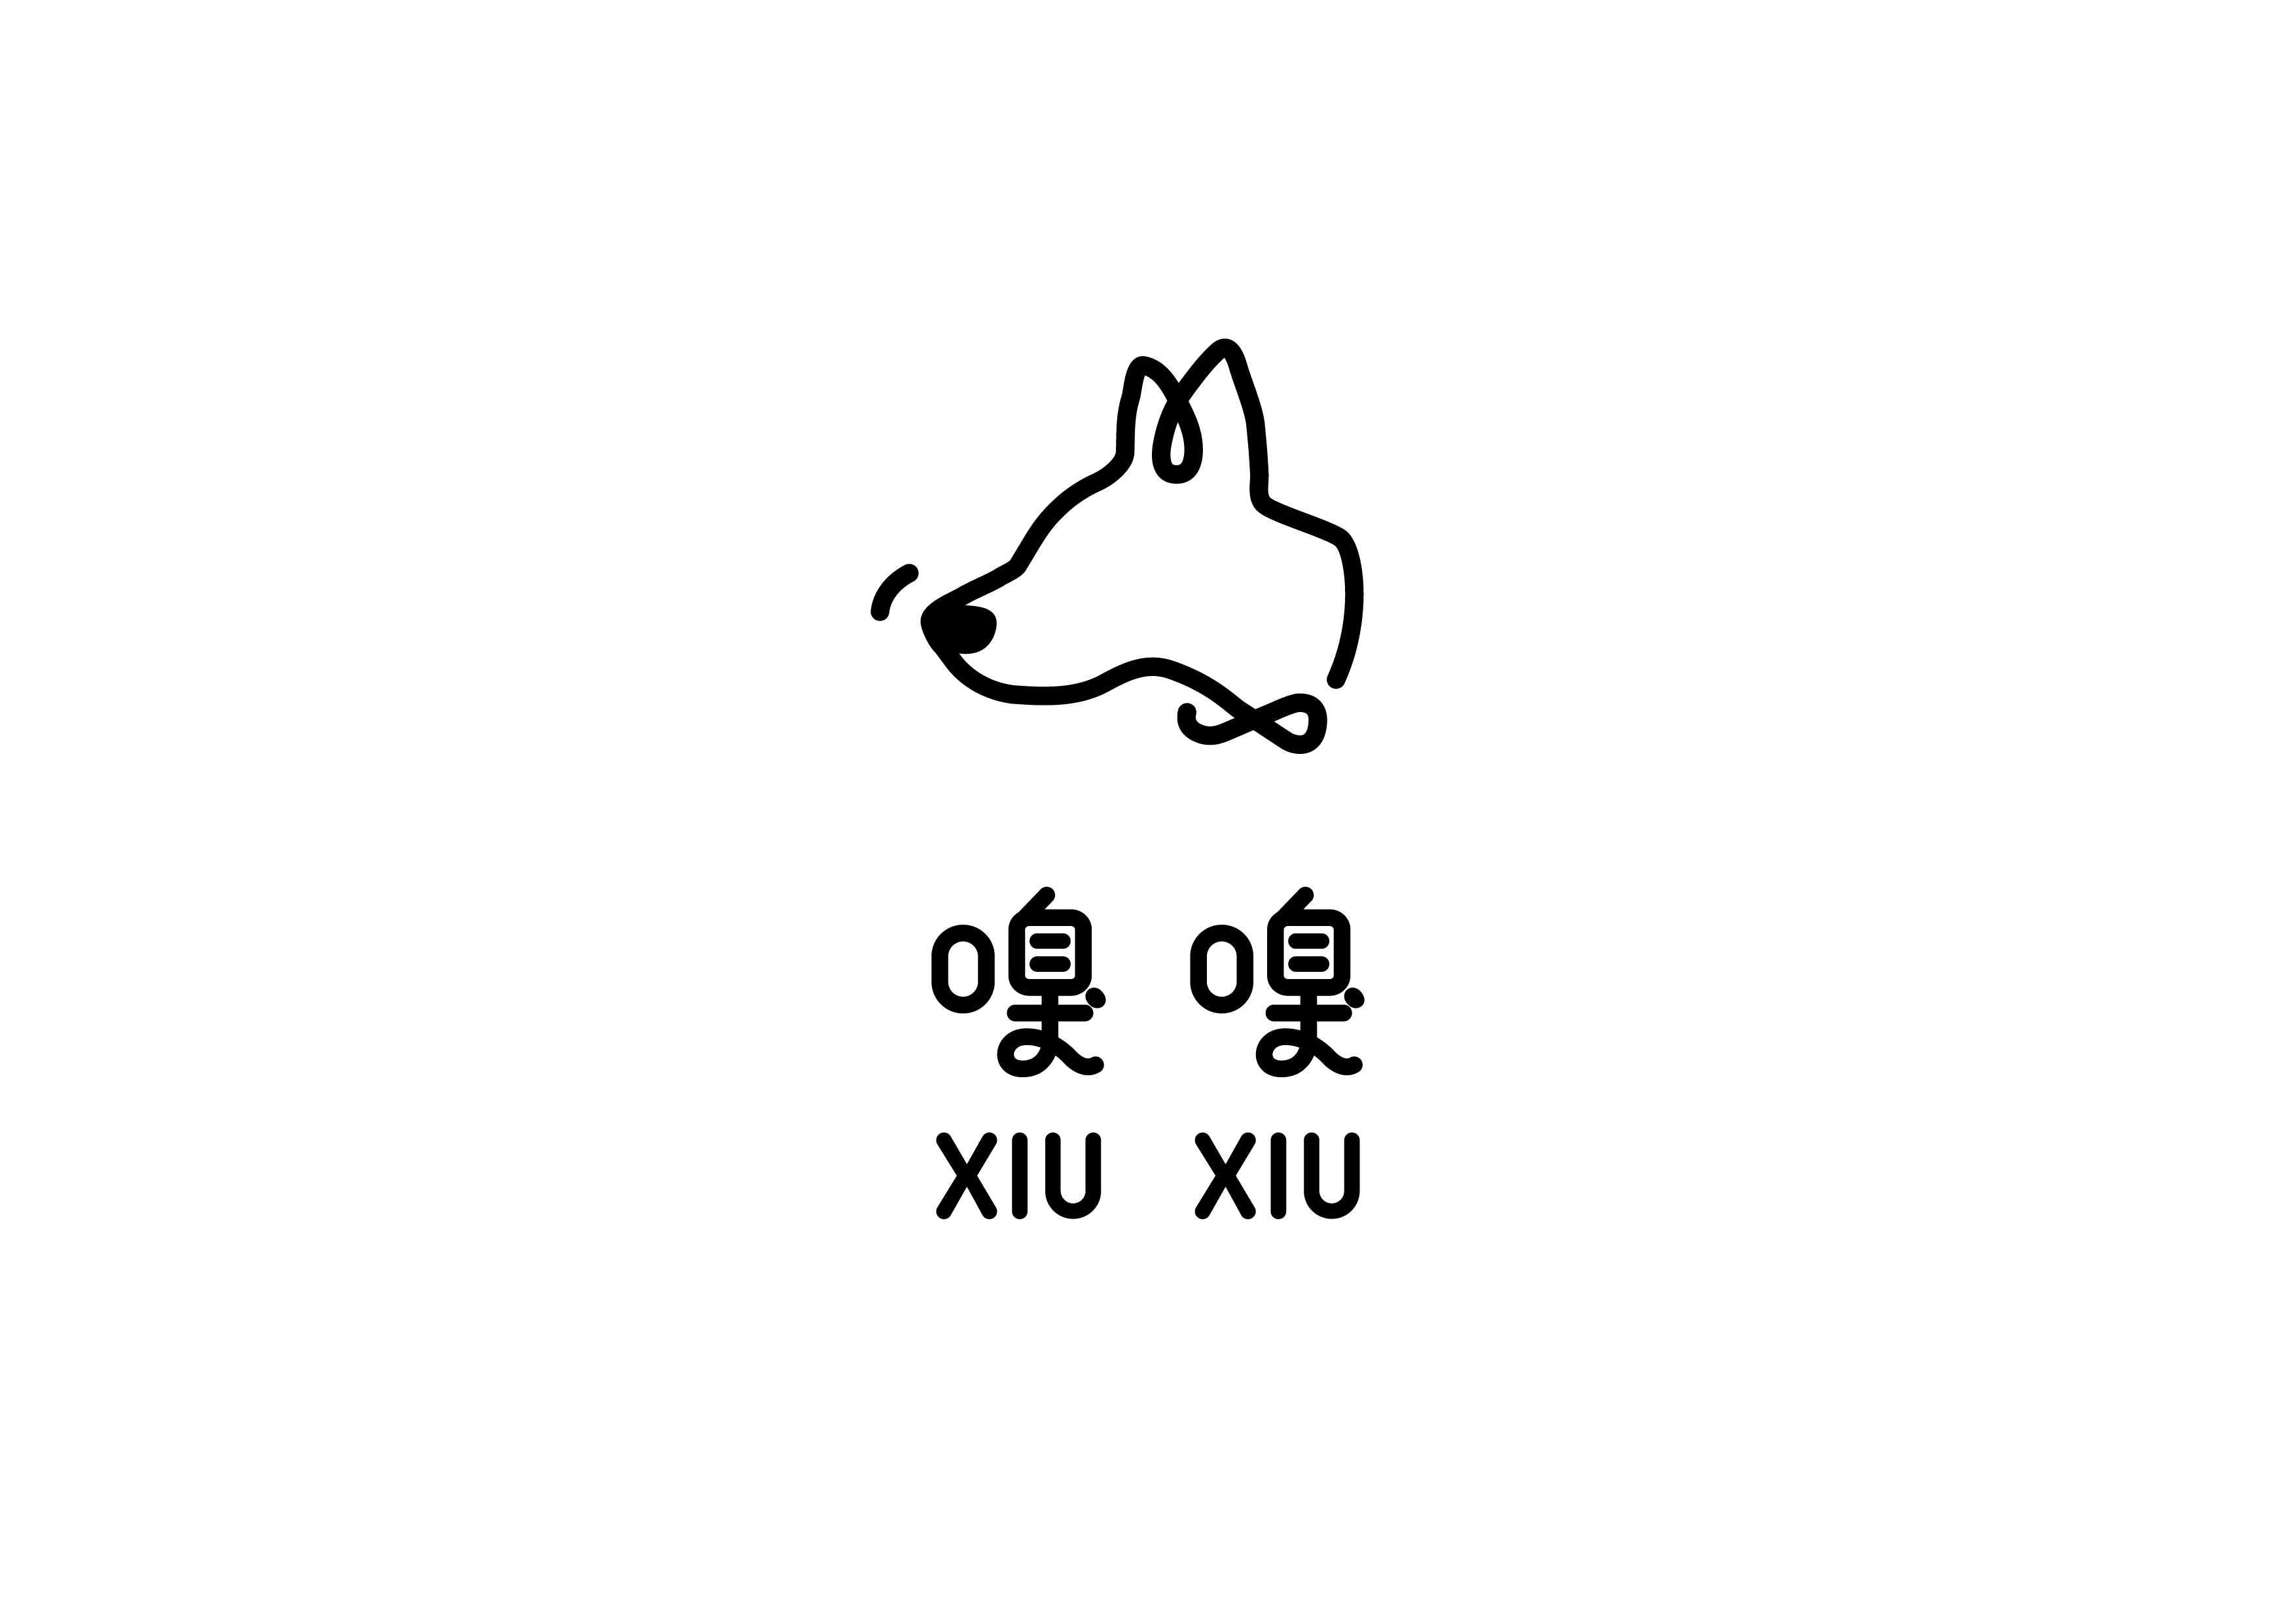 Xiu Xiu Logo, Image courtesy of Jay Guan-Jie Peng